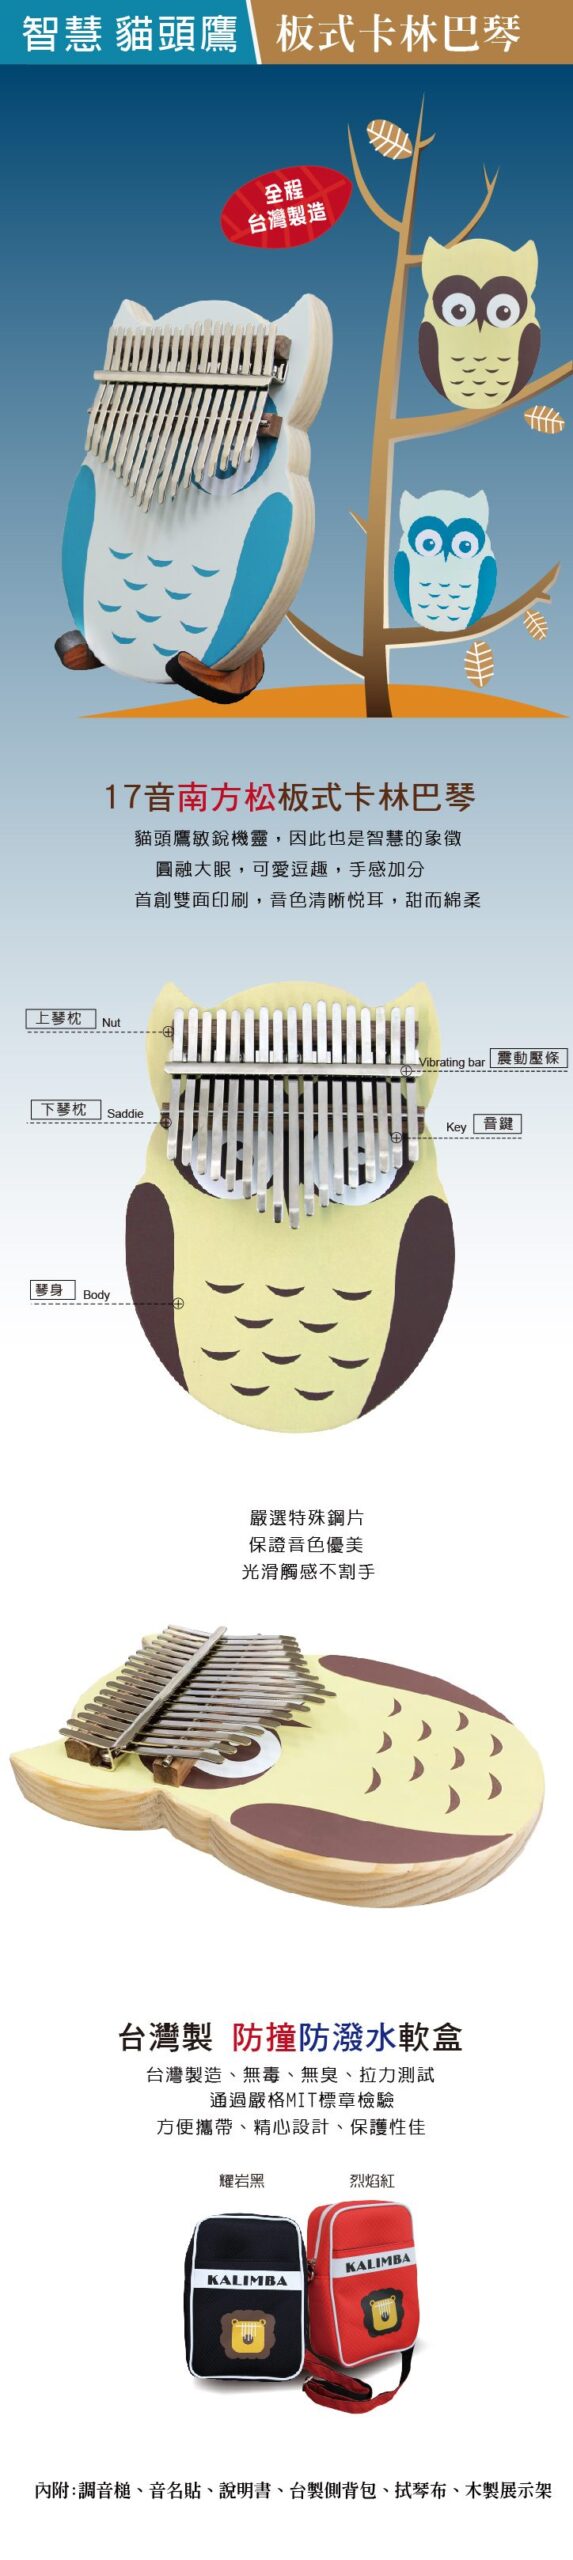 智慧貓頭鷹 板式卡林巴琴1350元 台灣製造 新品上市